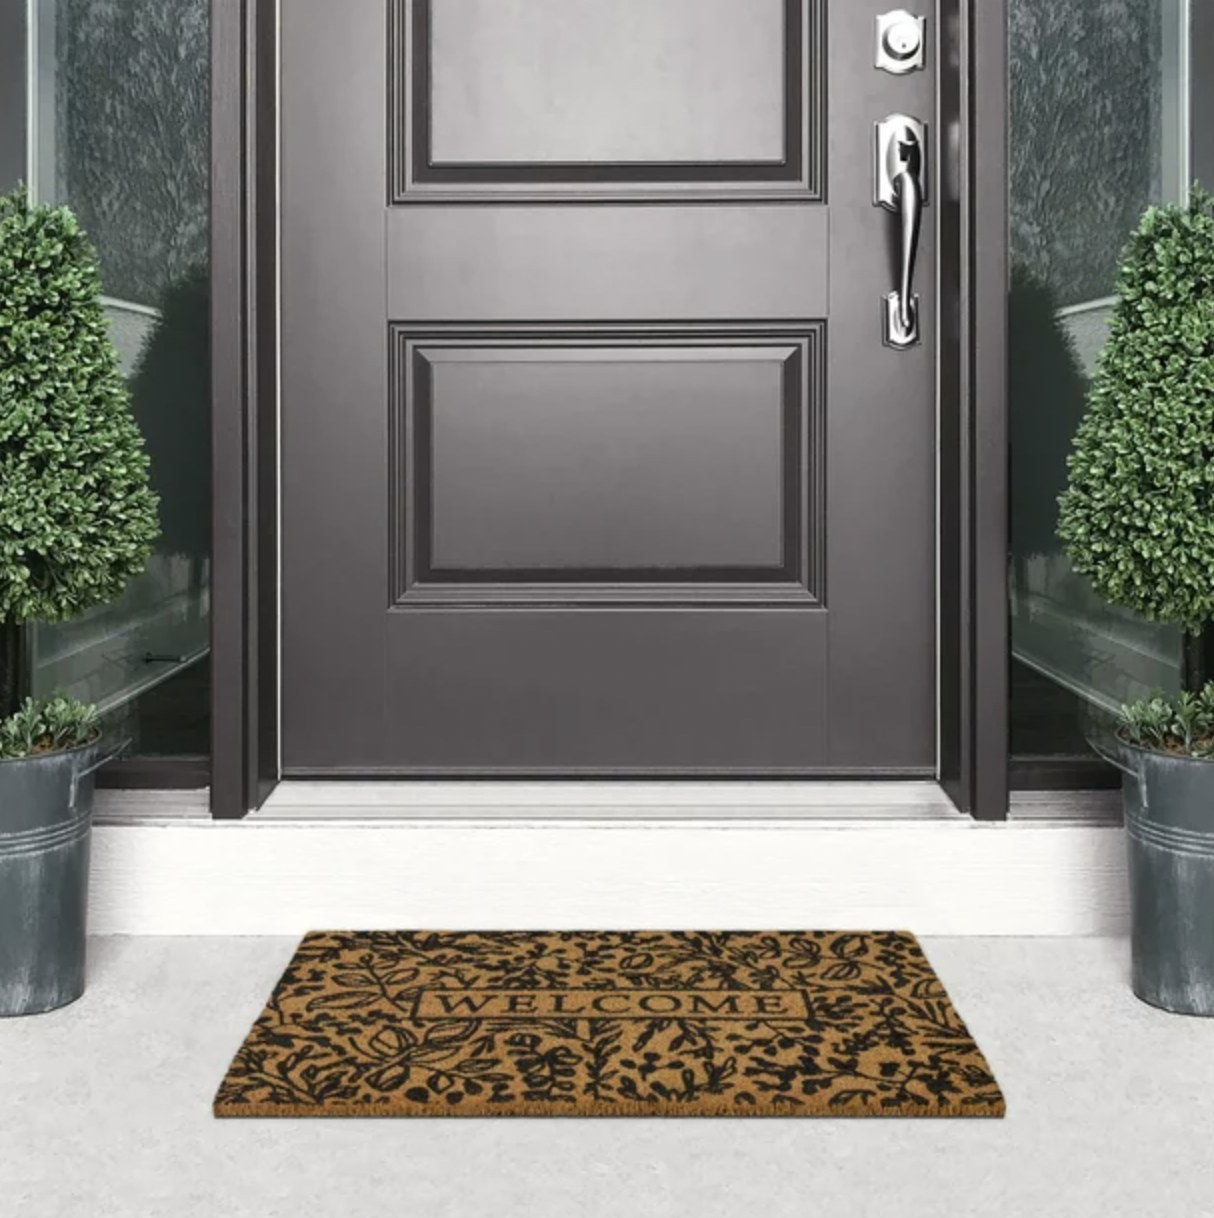 The doormat in front of a black front door